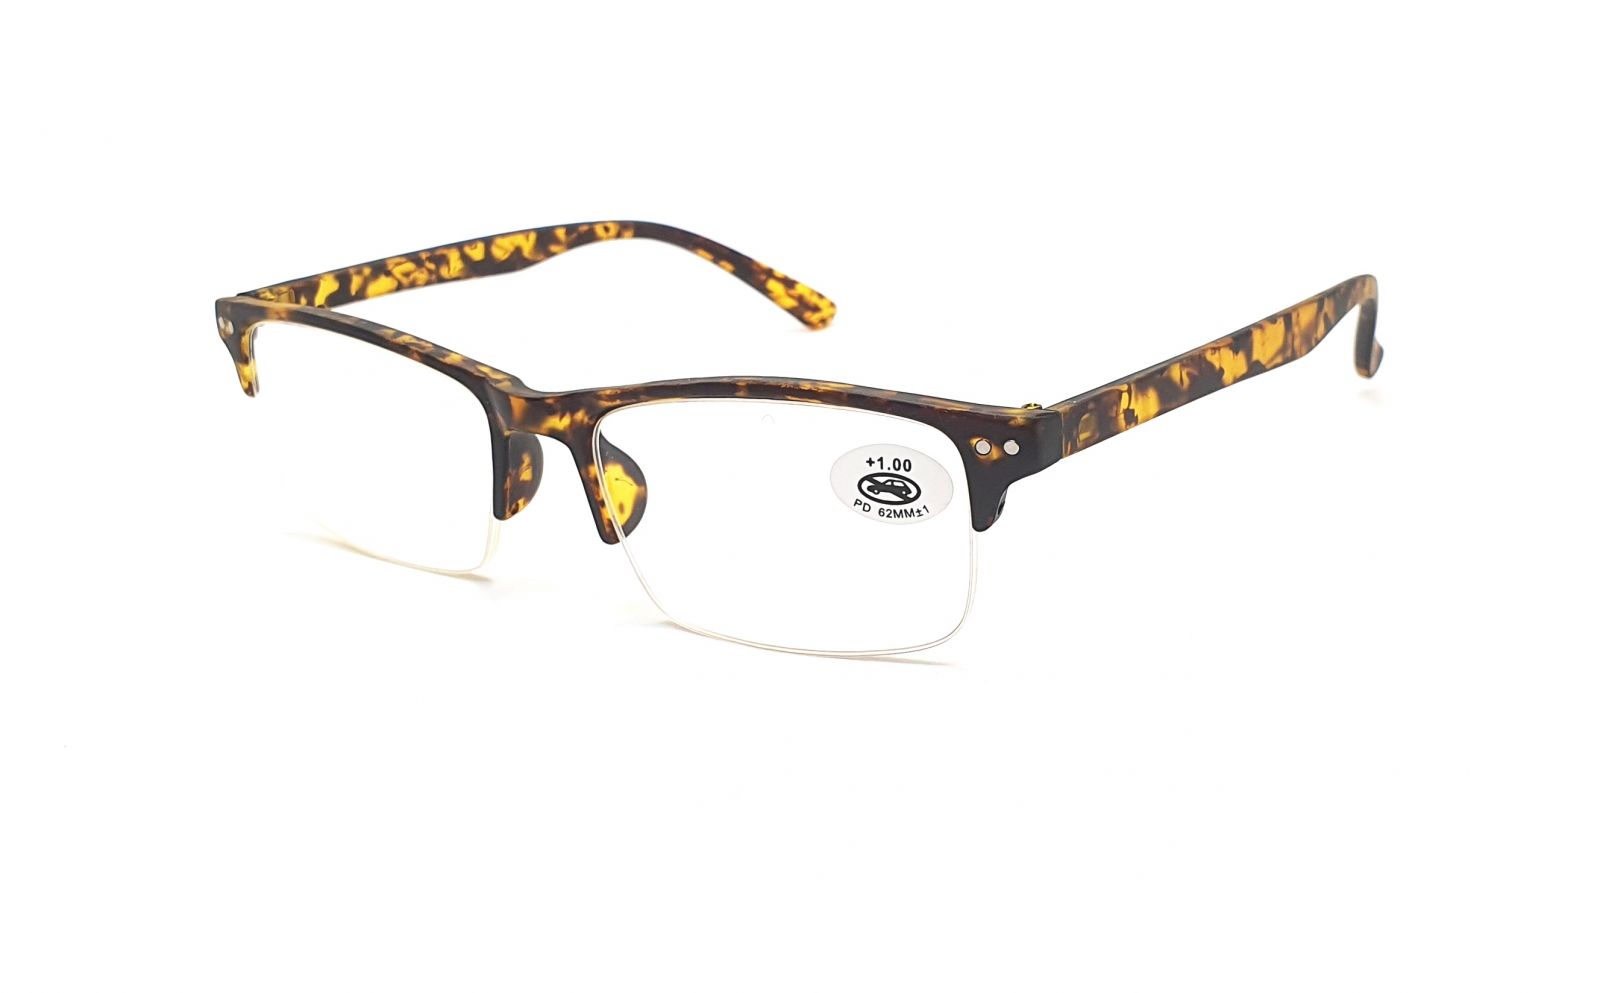 Dioptrické brýle P8011 +3,00 brown